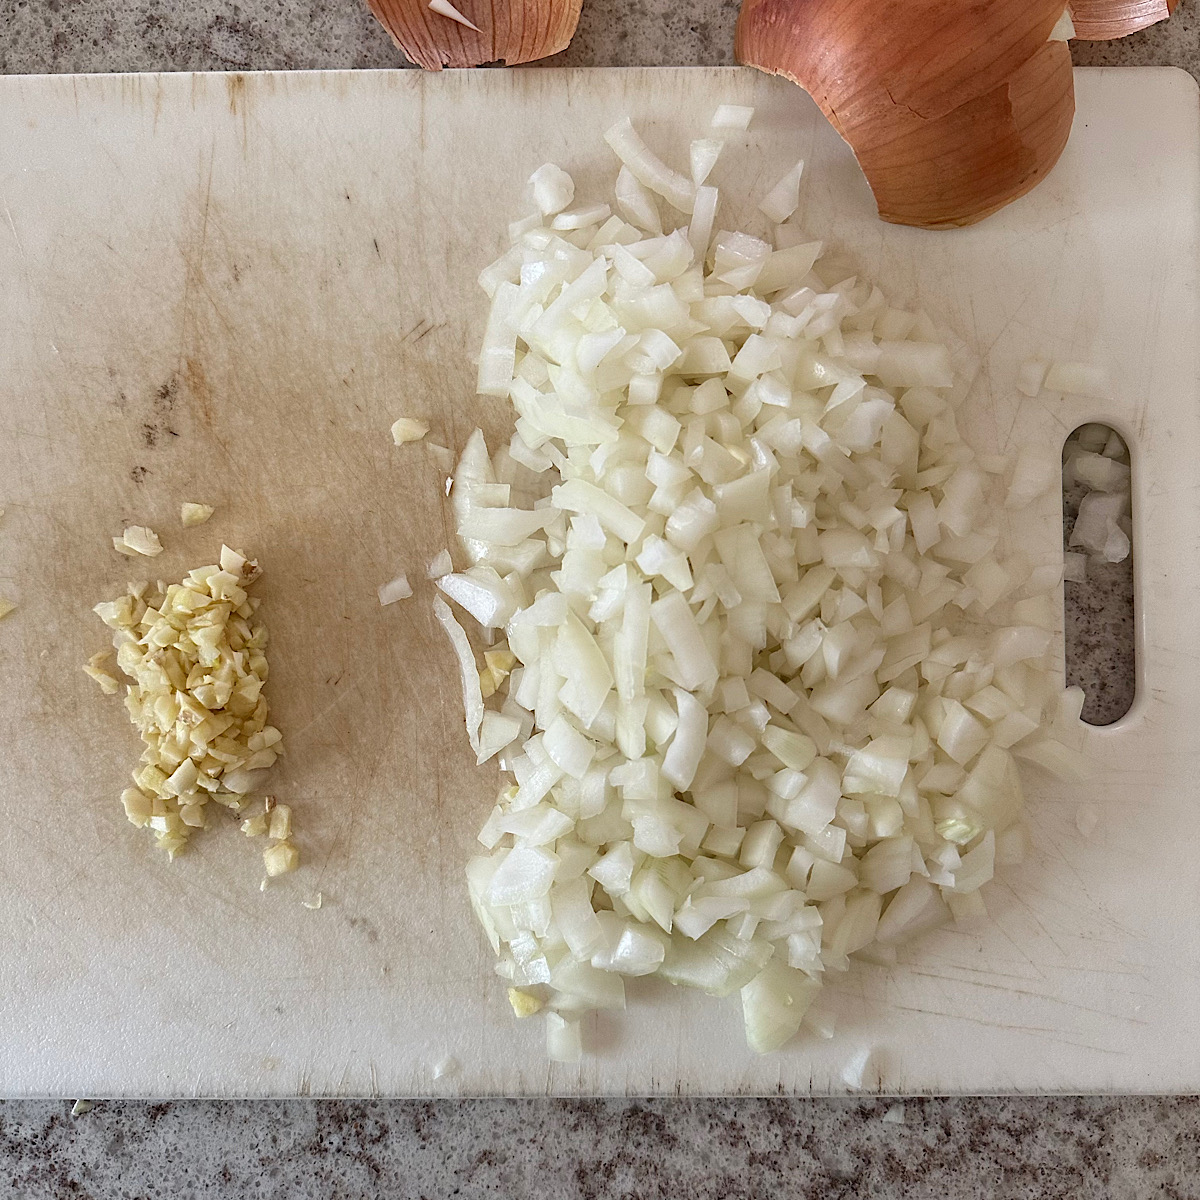 Chopped onion and garlic on cutting board.